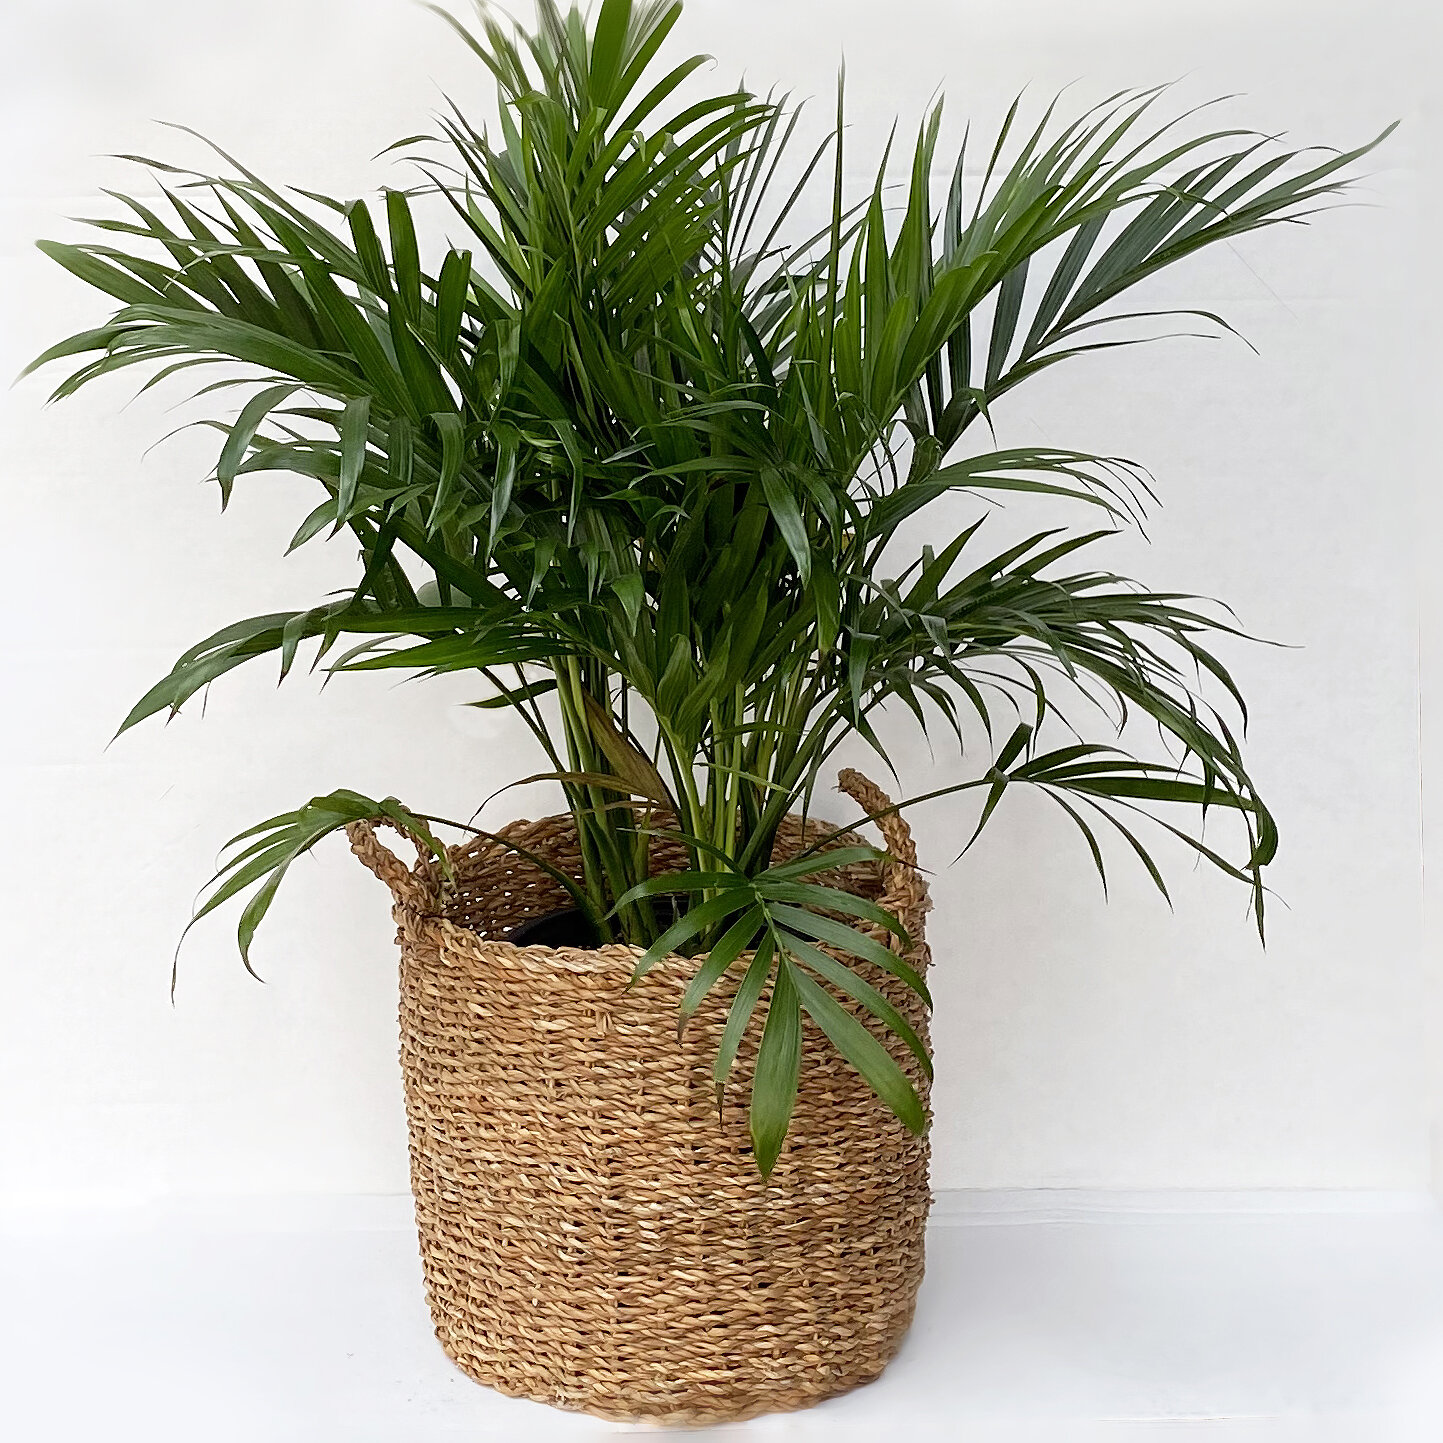 II. Benefits of Having Indoor Tropical Plants